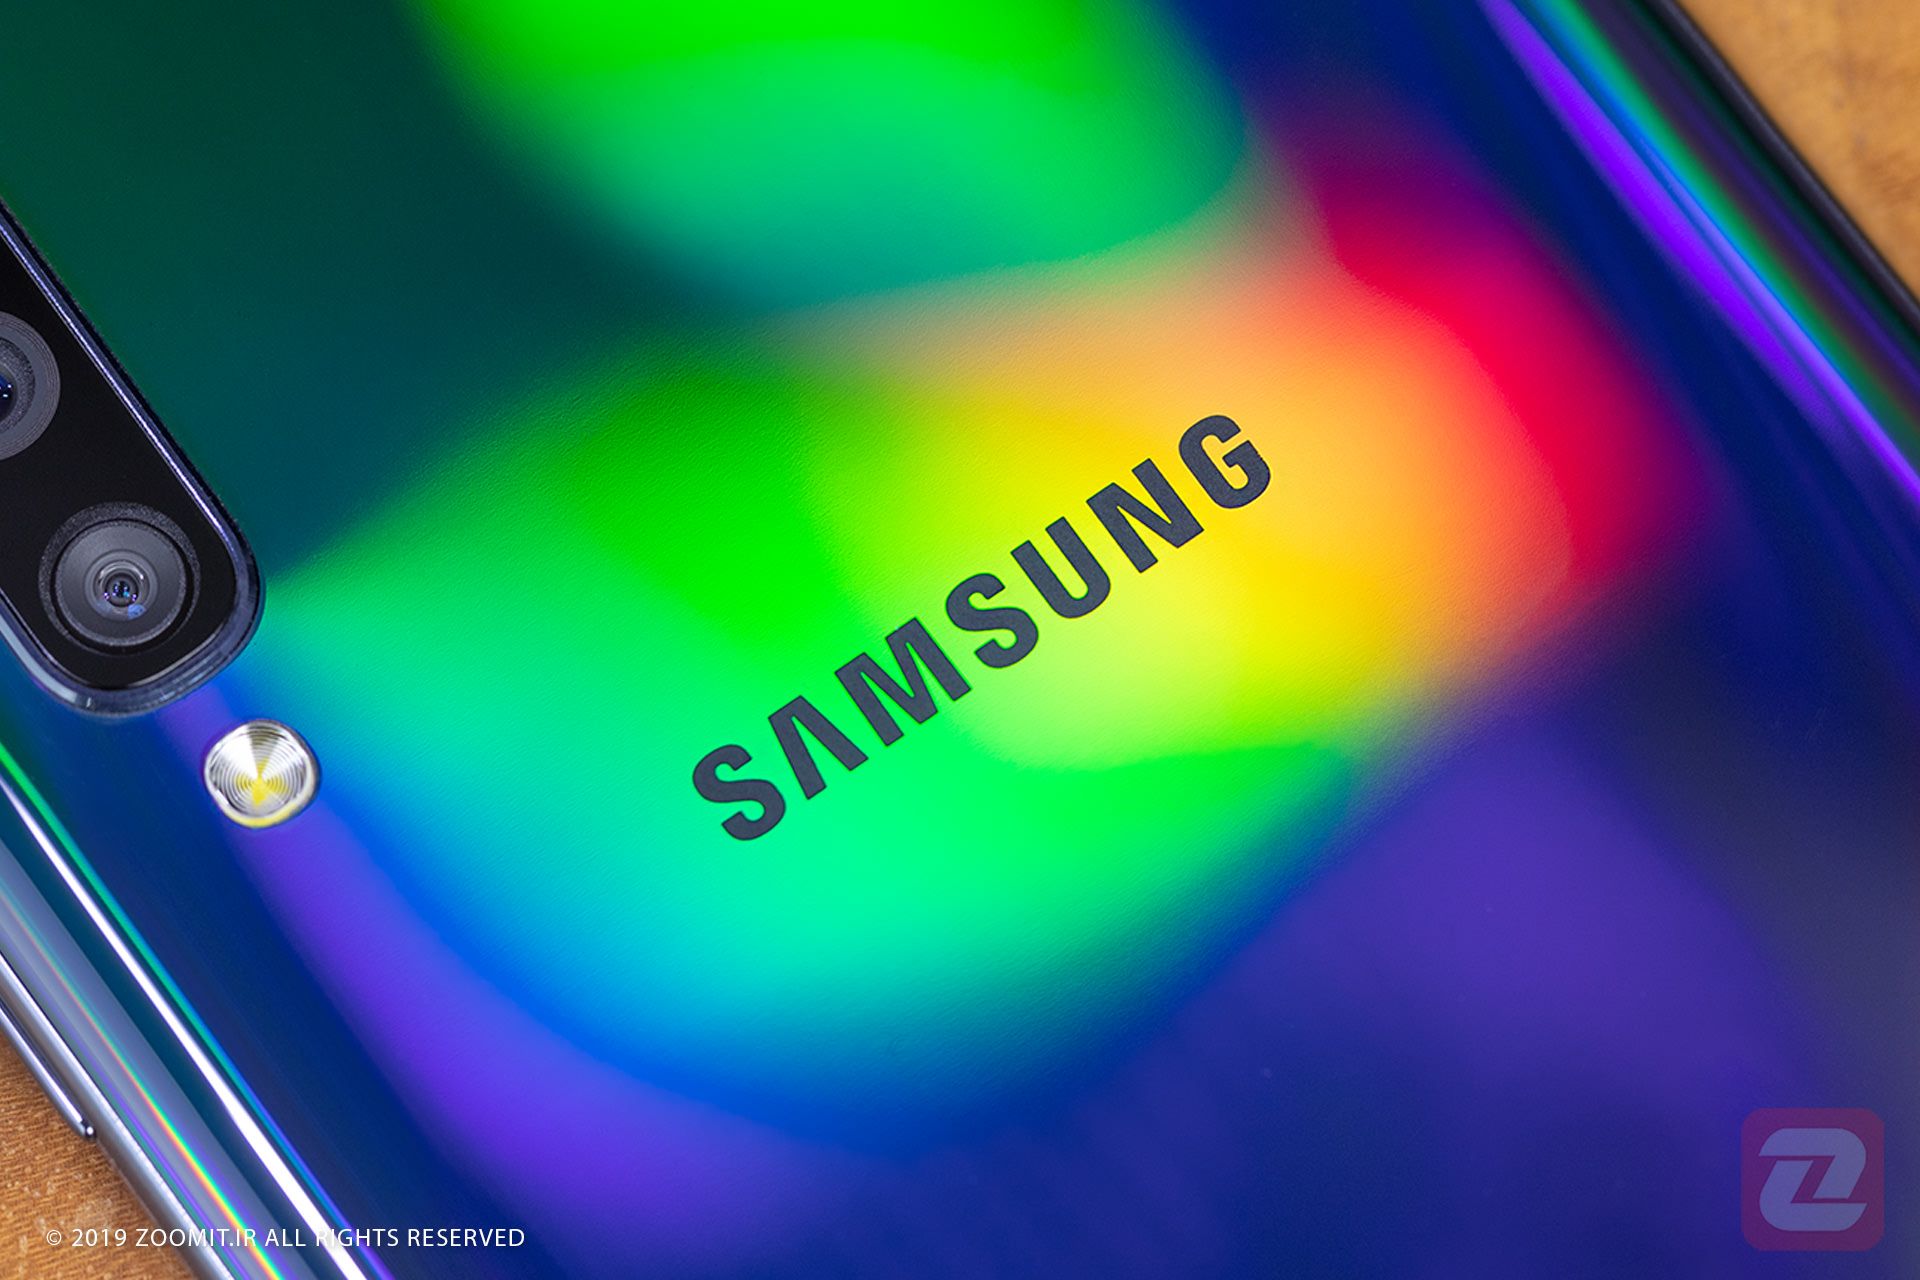 مرجع متخصصين ايران سامسونگ  / Samsung